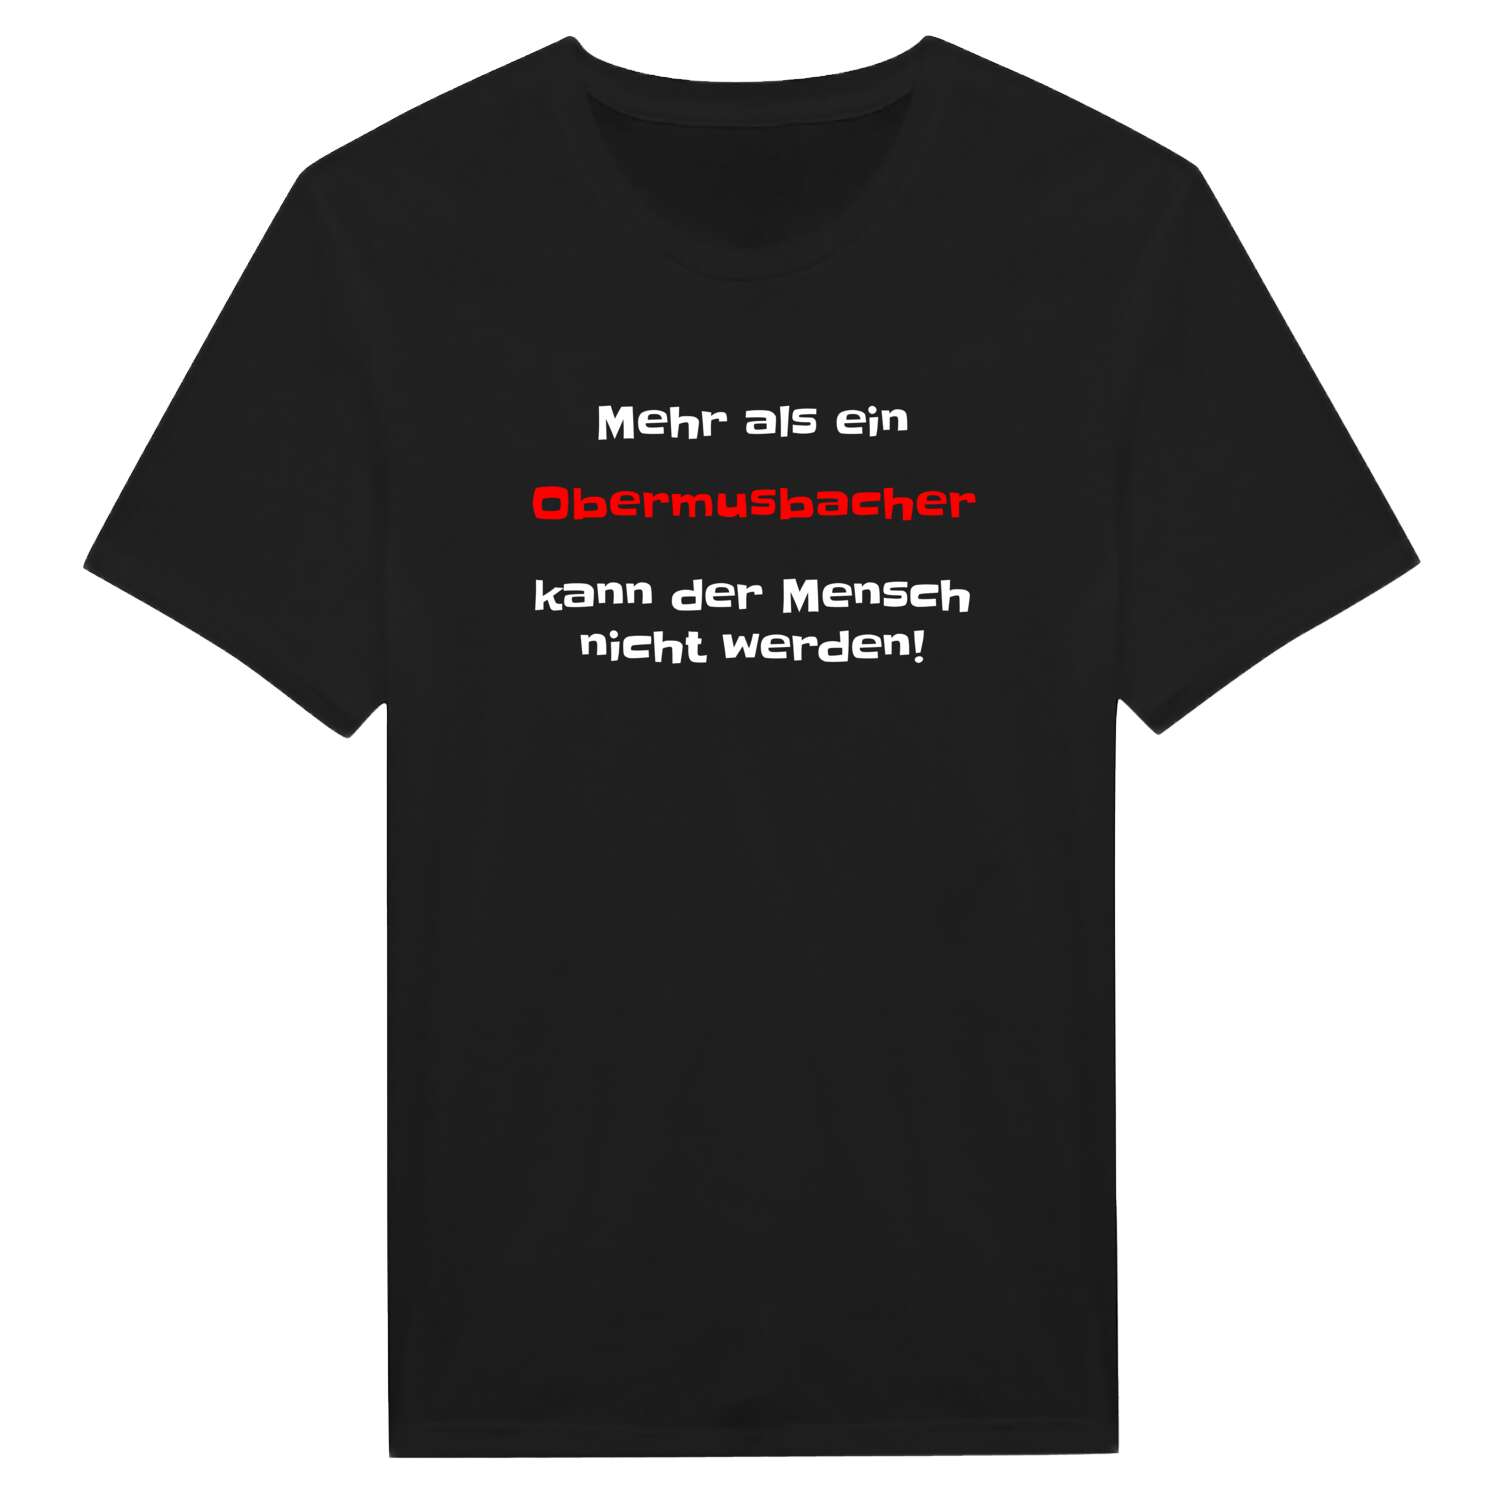 Obermusbach T-Shirt »Mehr als ein«